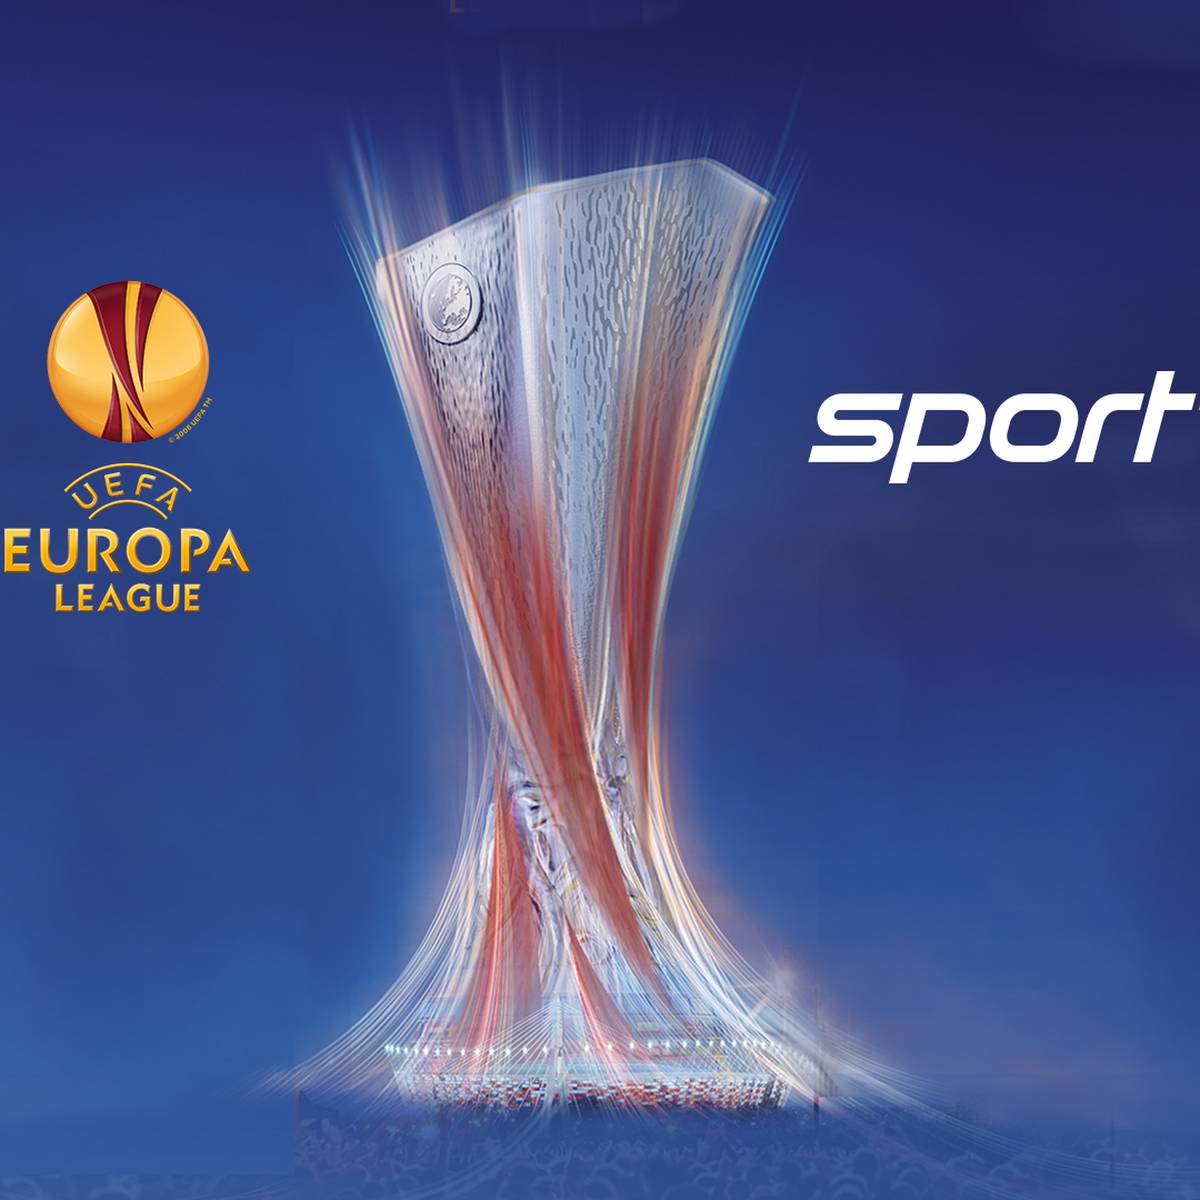 SPORT1 erwirbt umfangreiches Rechtepaket an UEFA Europa League